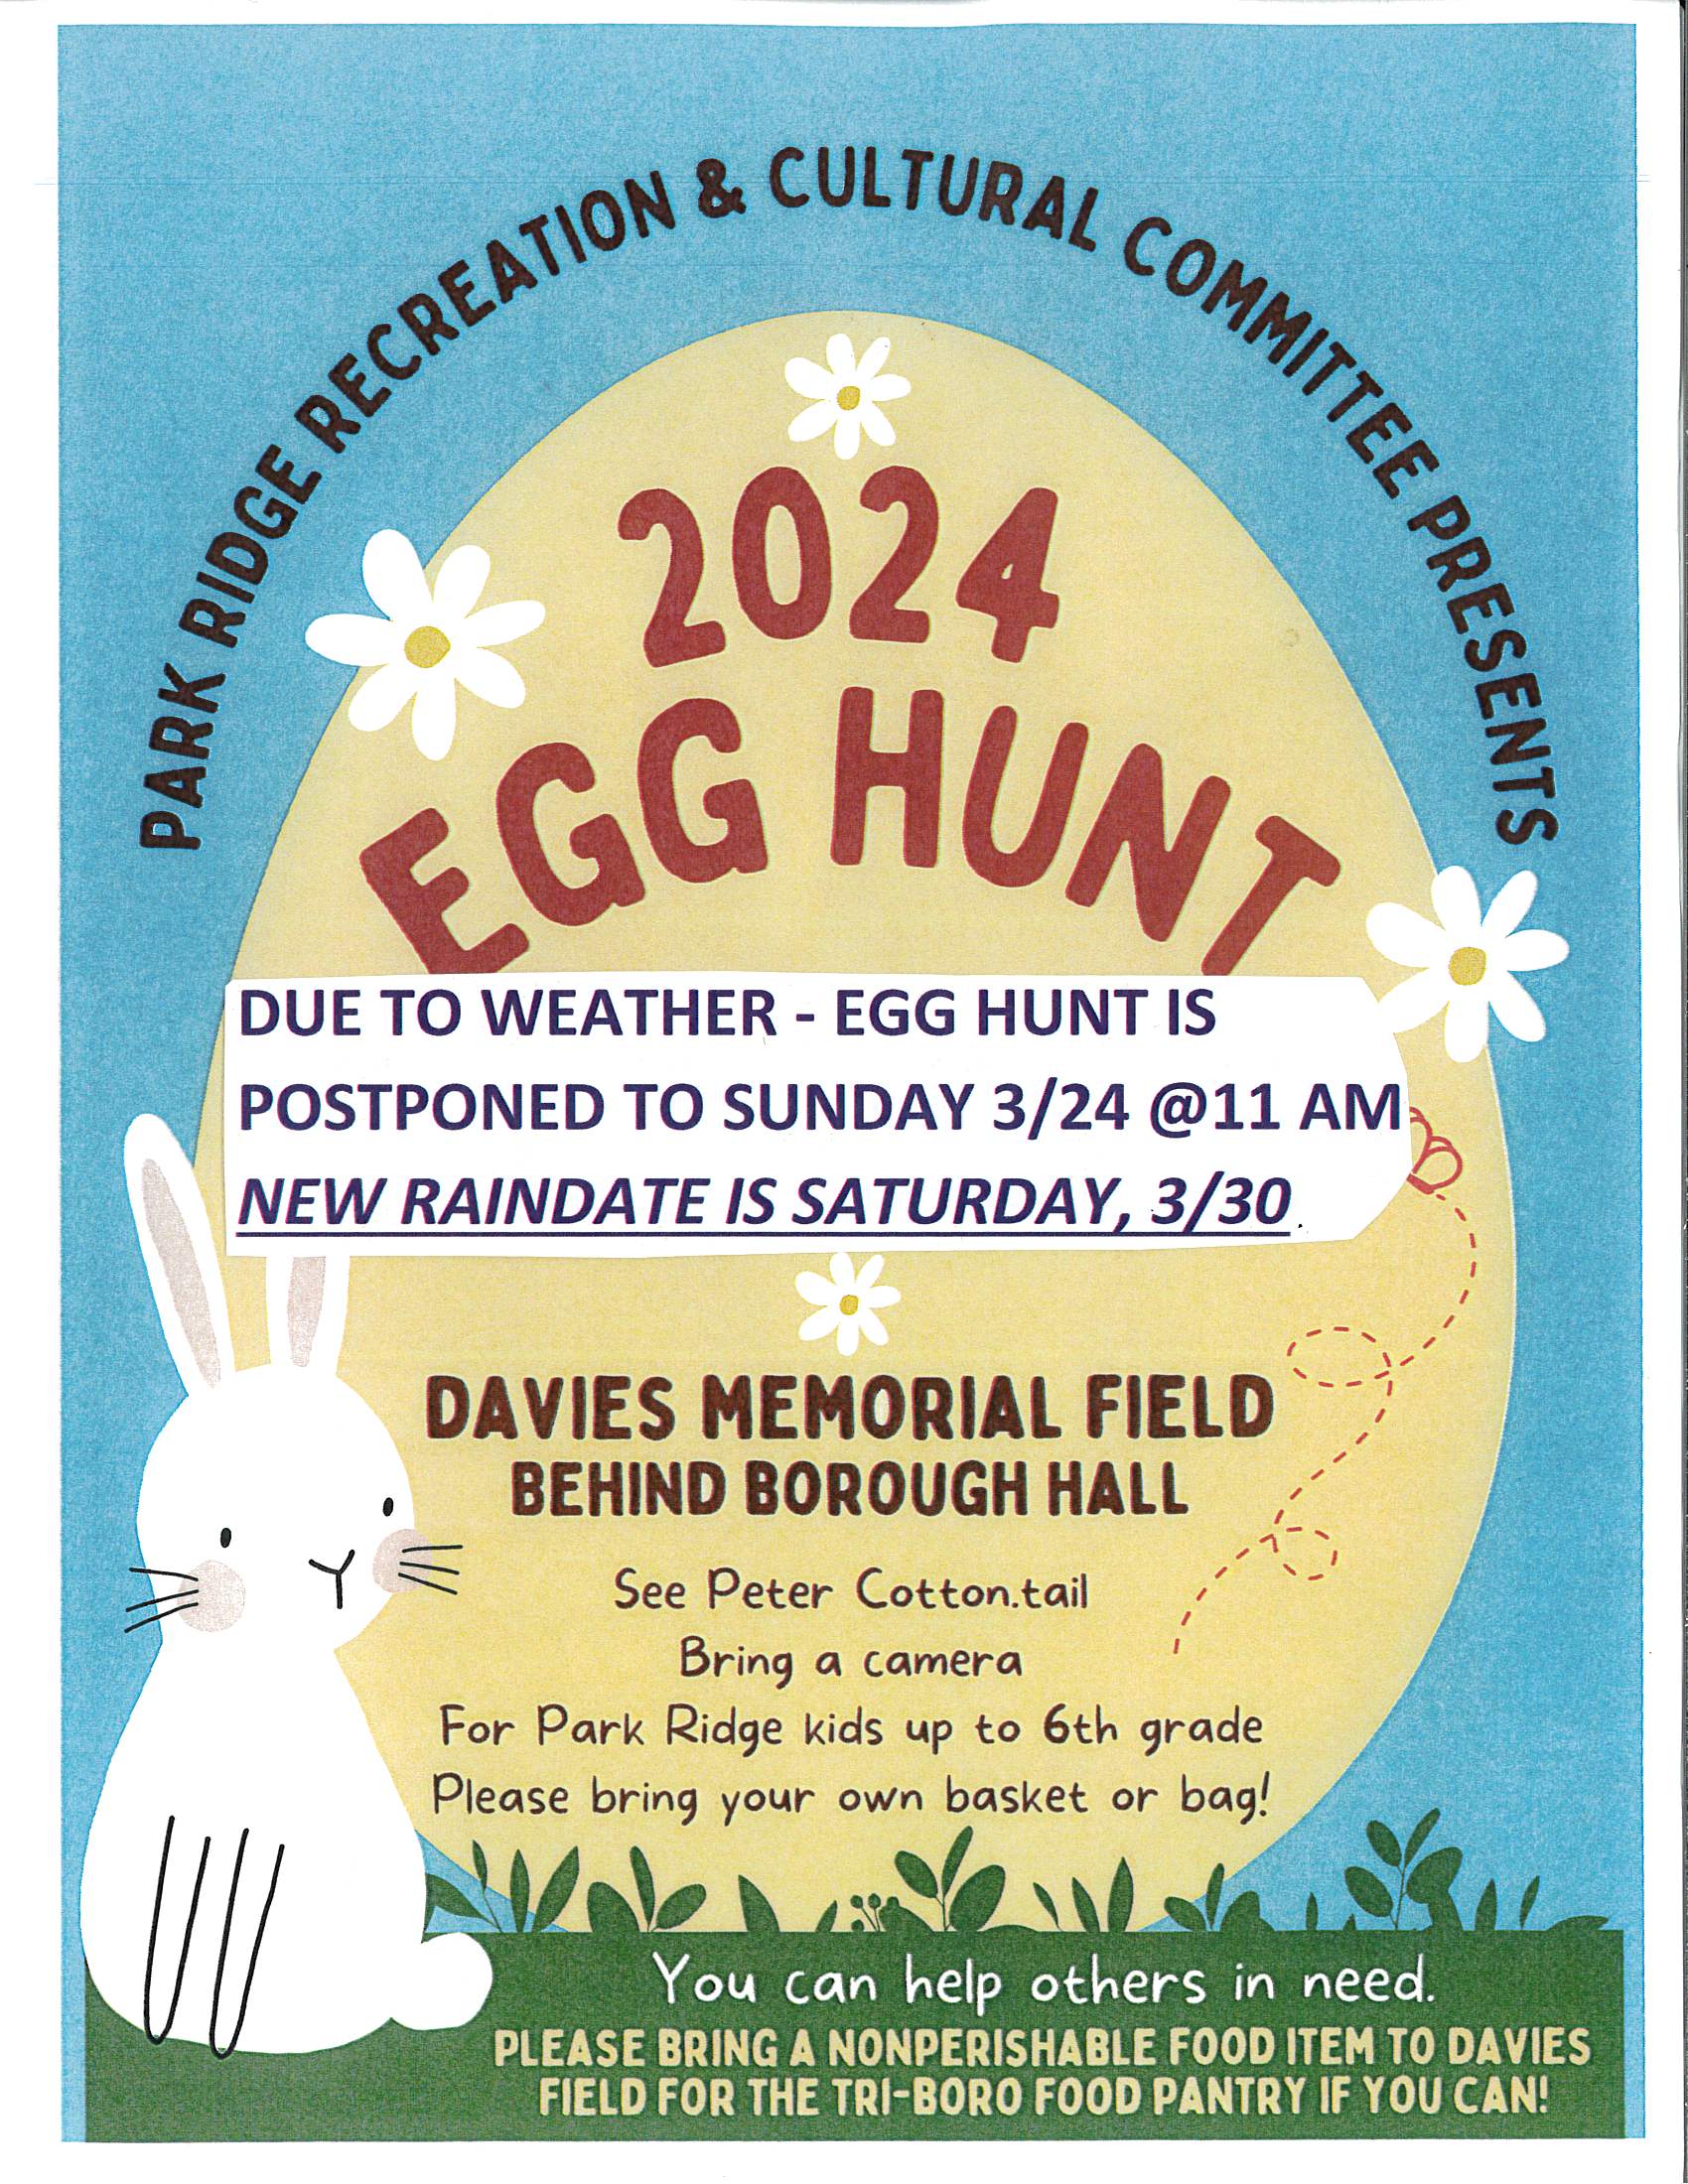 2024 Egg Hunt Revised New Date Flyer